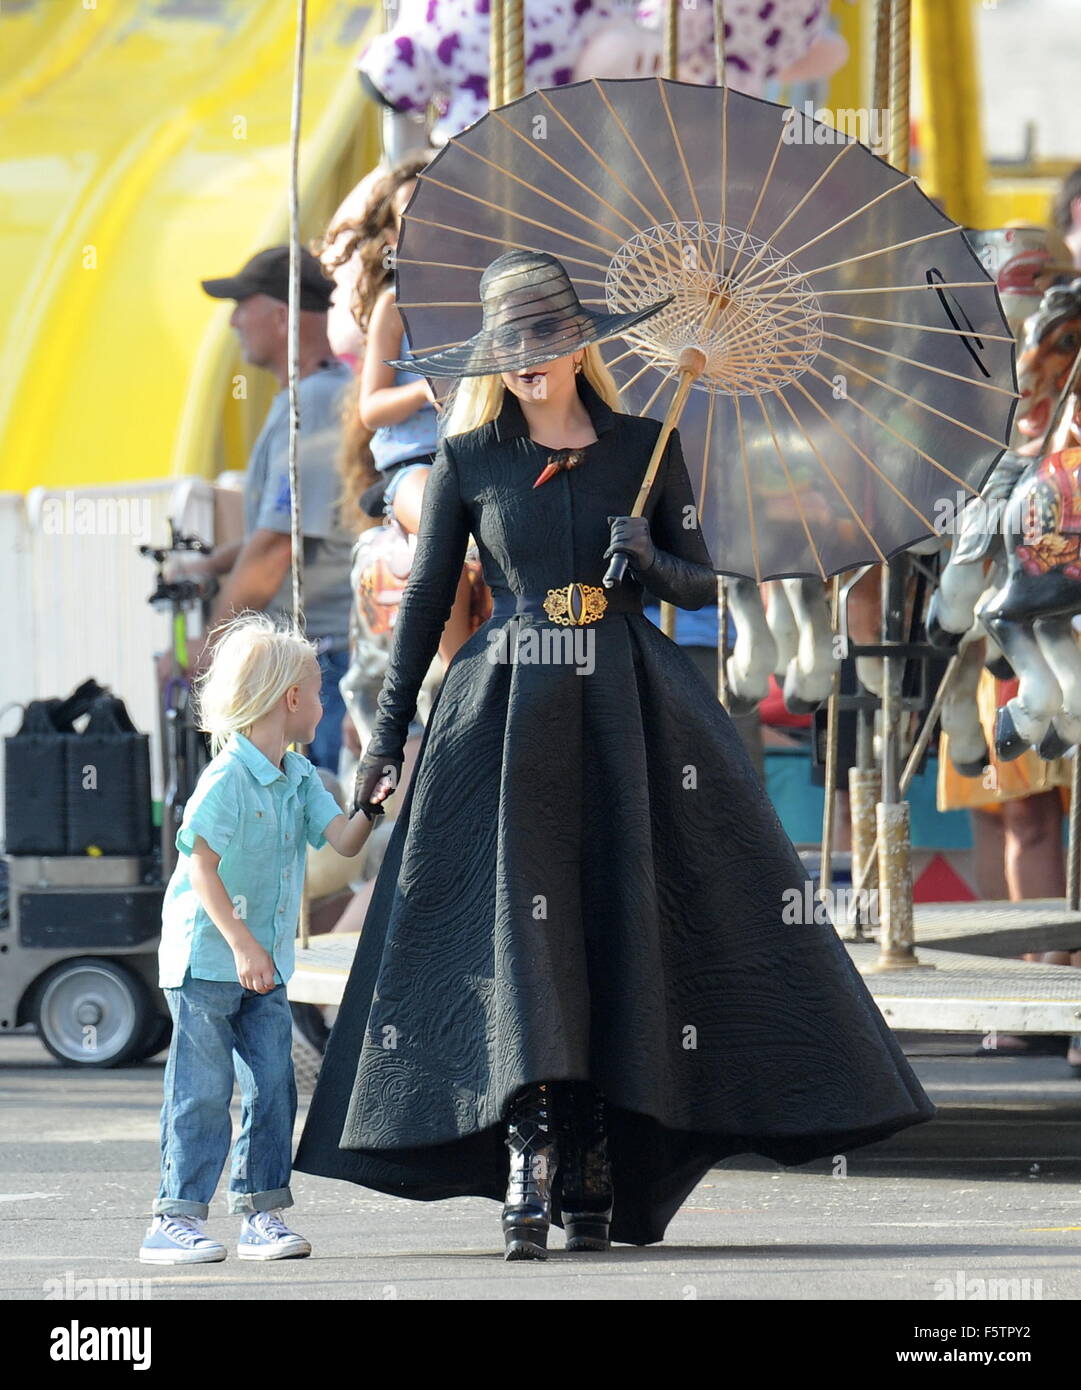 La condesa Lady Gaga vestido de negro para una escena de carnaval en la  playa en Santa Mónica para 'American Horror Story Hotel' con co star Wes  Bentley. El cantante camina alrededor